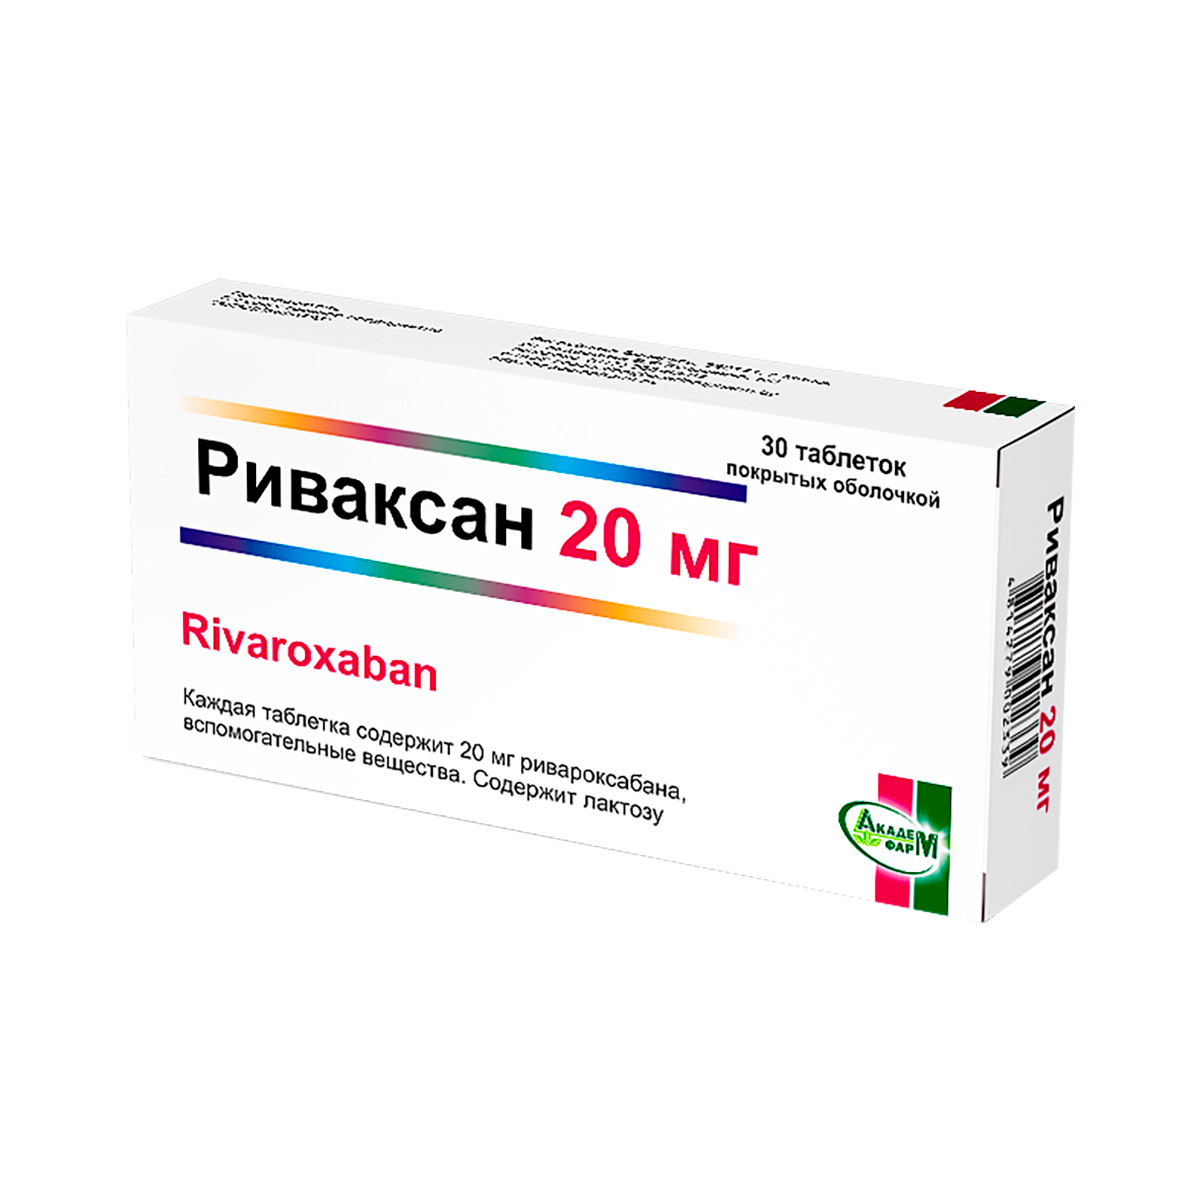 Риваксан 20 мг таблетки покрытые оболочкой 30 шт